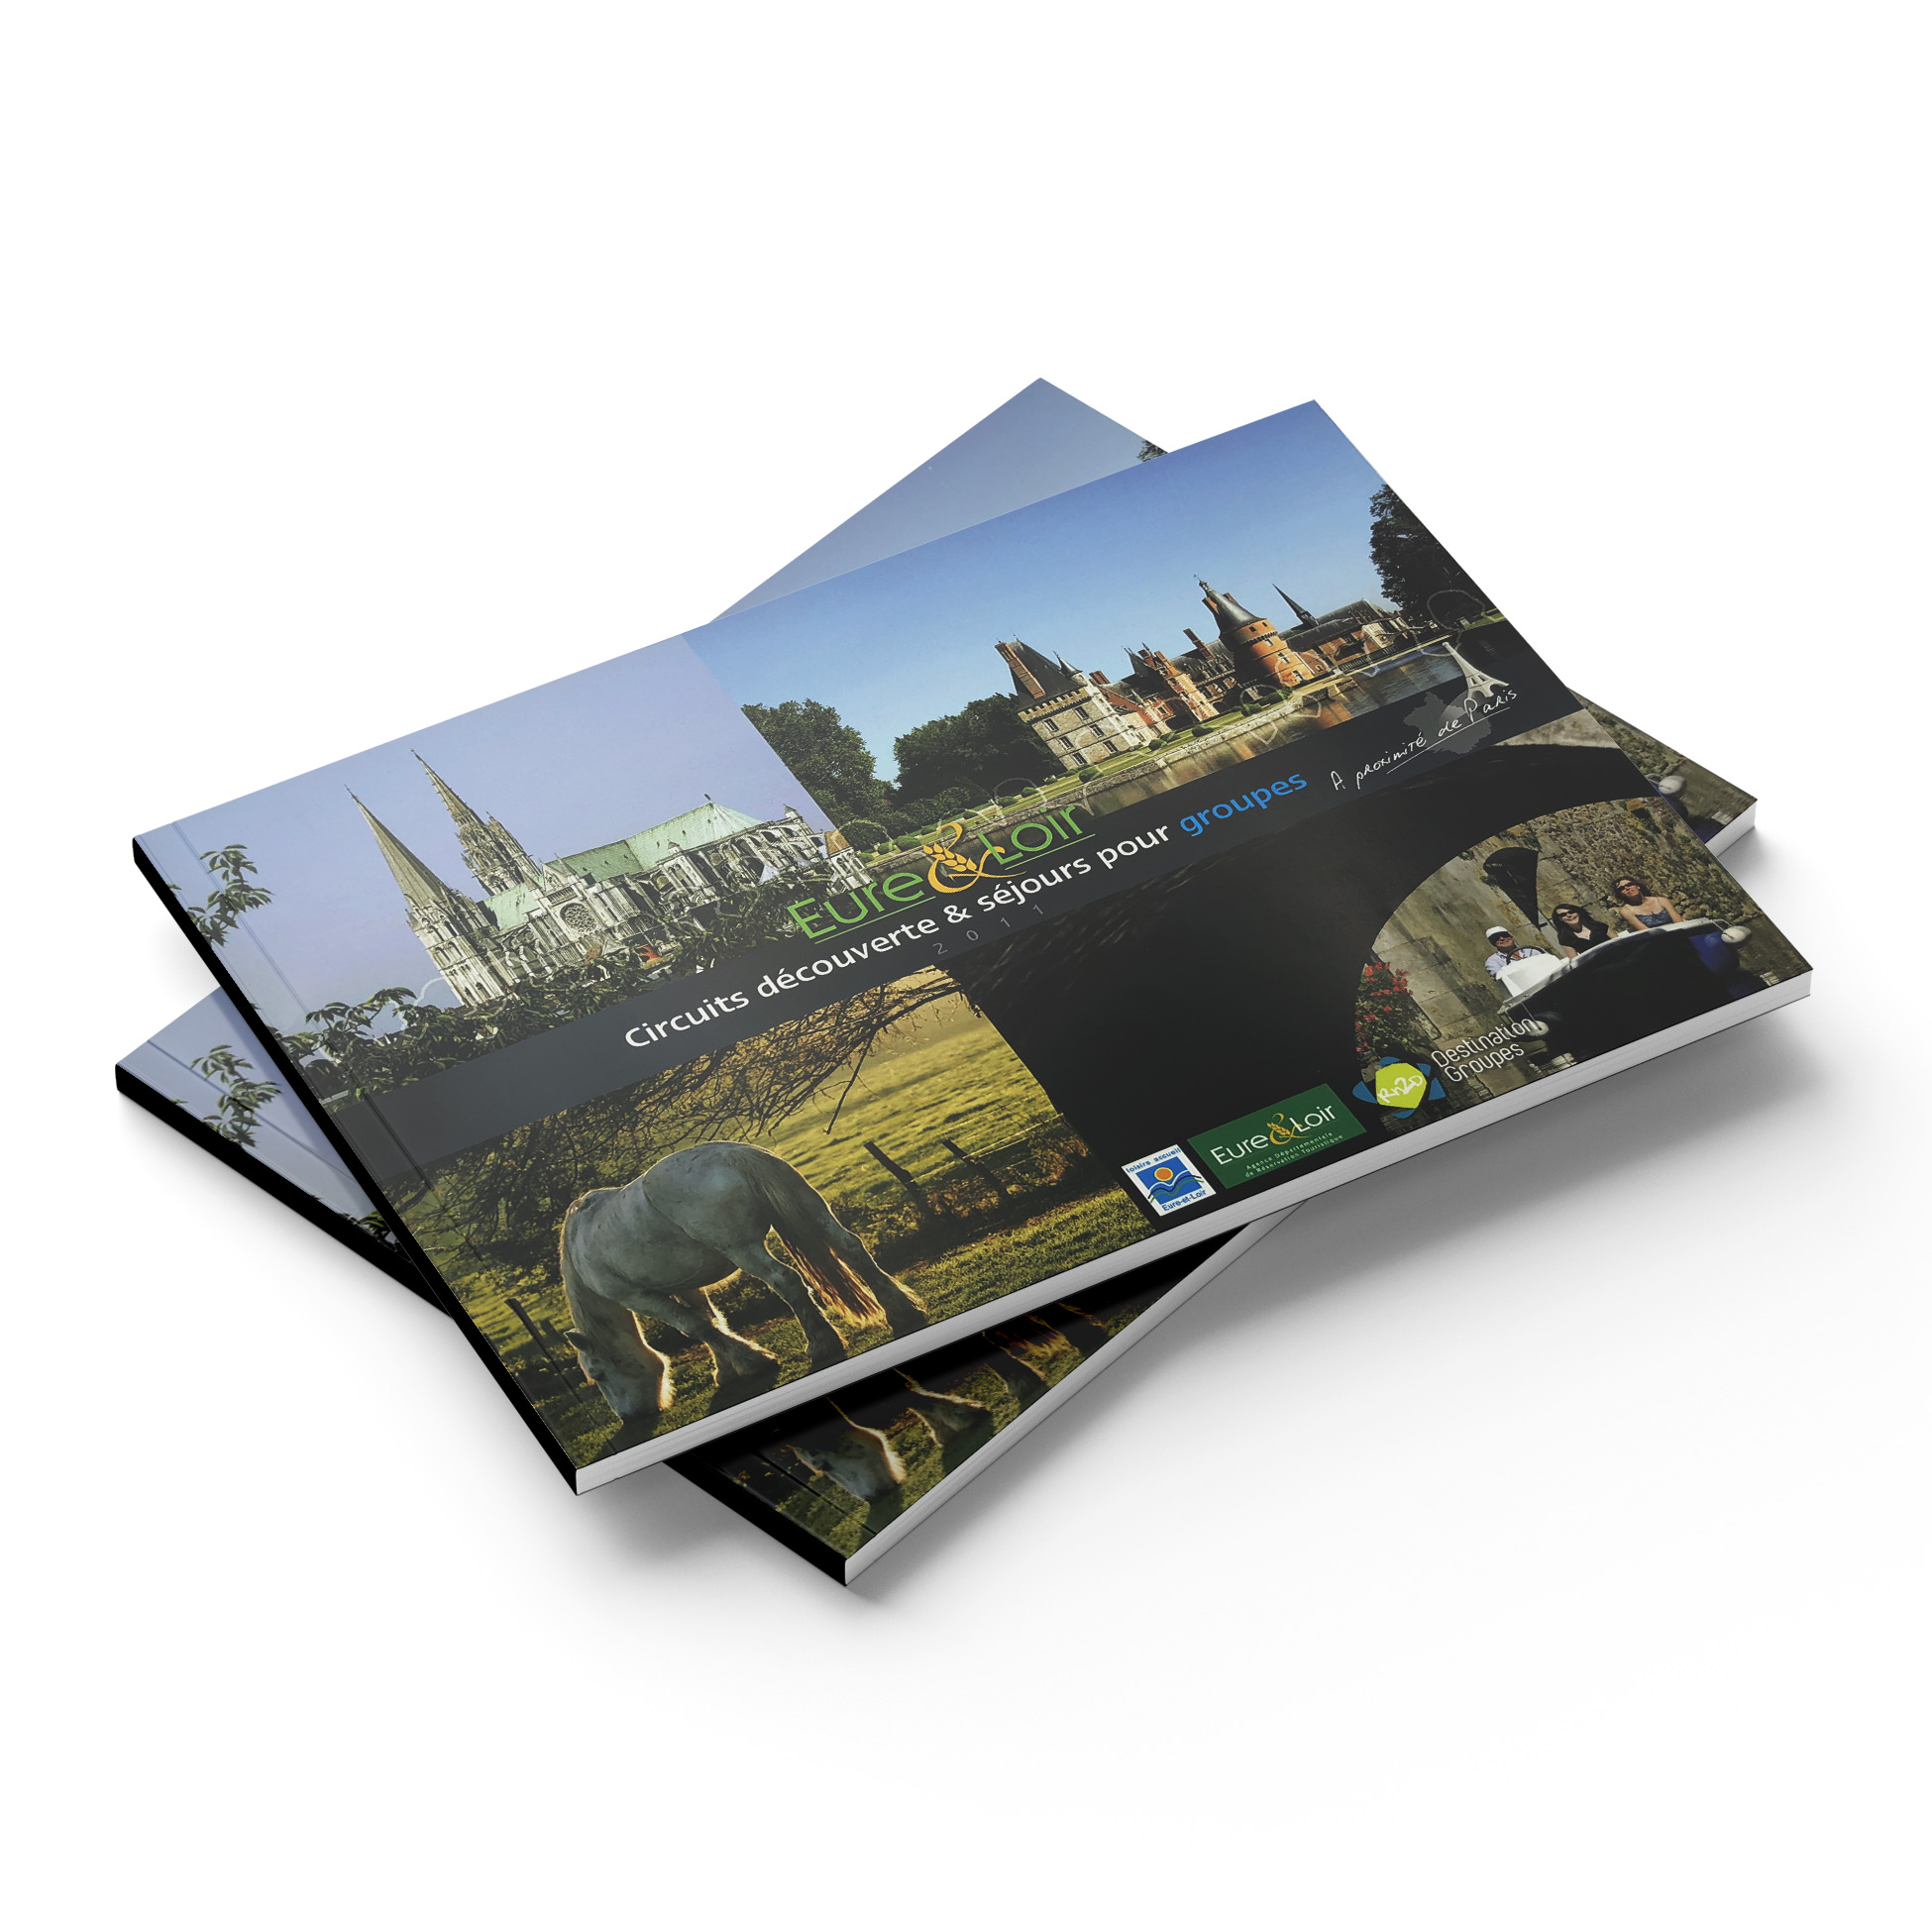 Comité de tourisme 28 - Brochures Groupes 2011